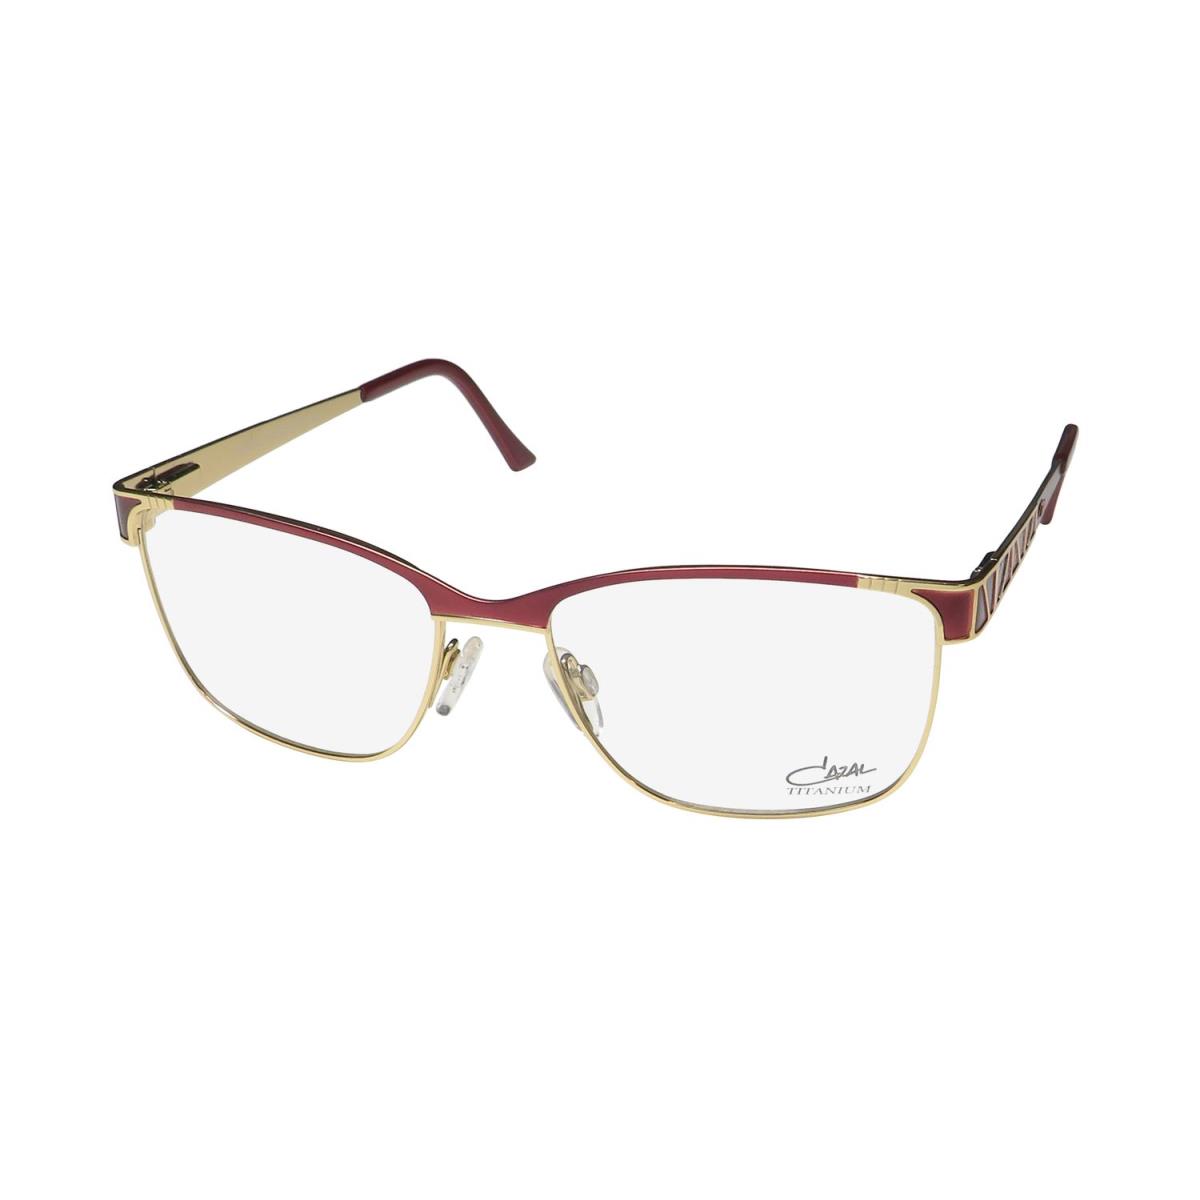 Cazal 4287 Titanium Made IN Germany Designer Rare Eyeglass Frame/glasses Burgundy / Gold